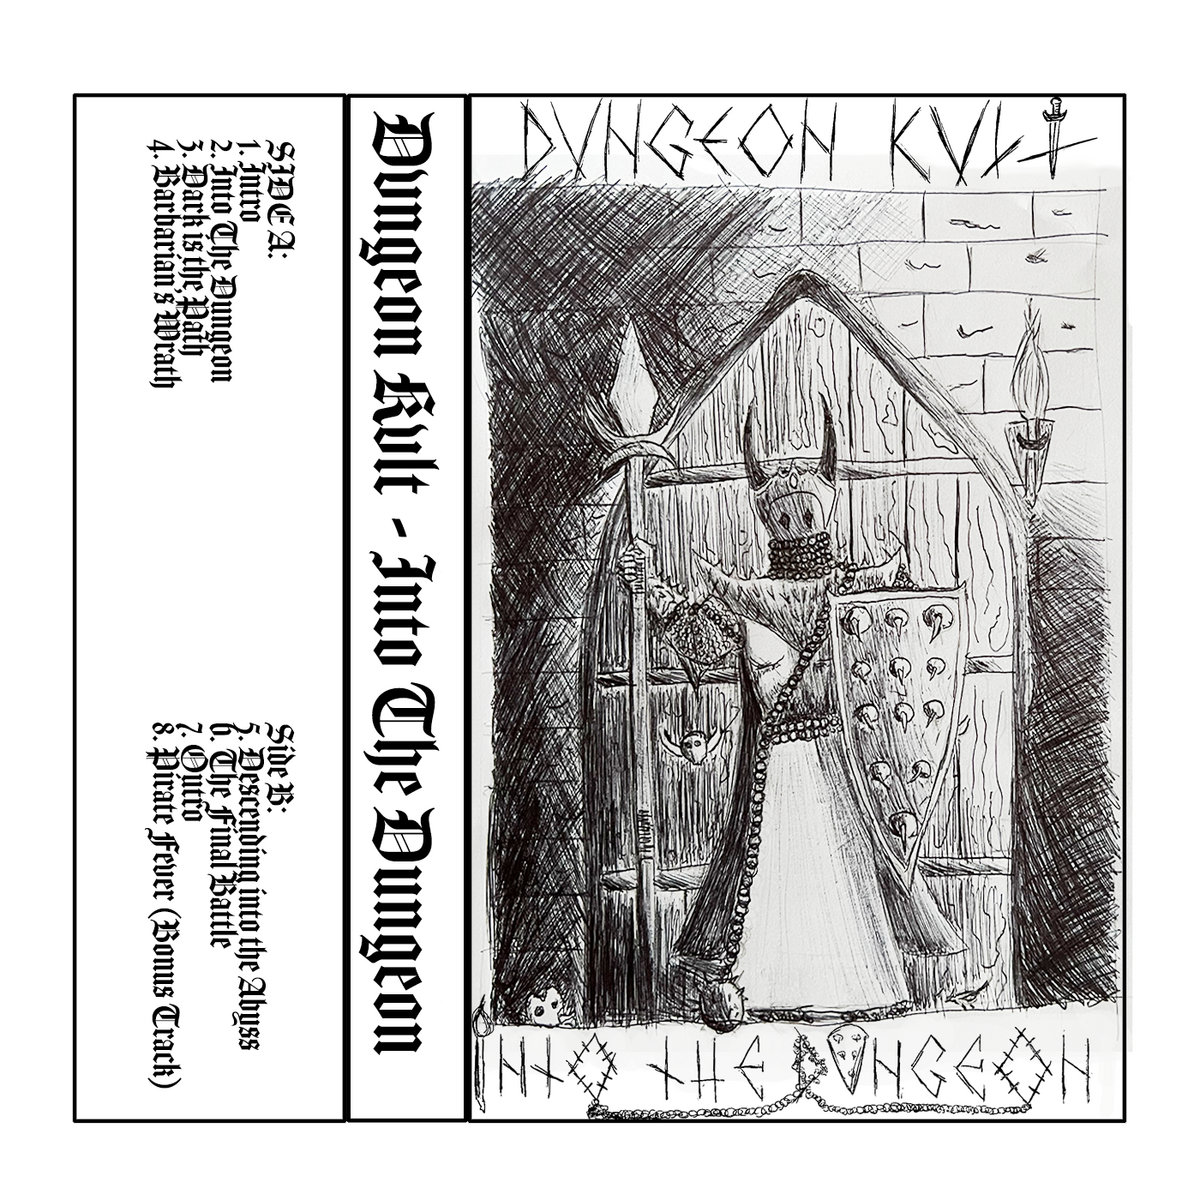 Dvngeon Kvlt - Into The Dvngeon